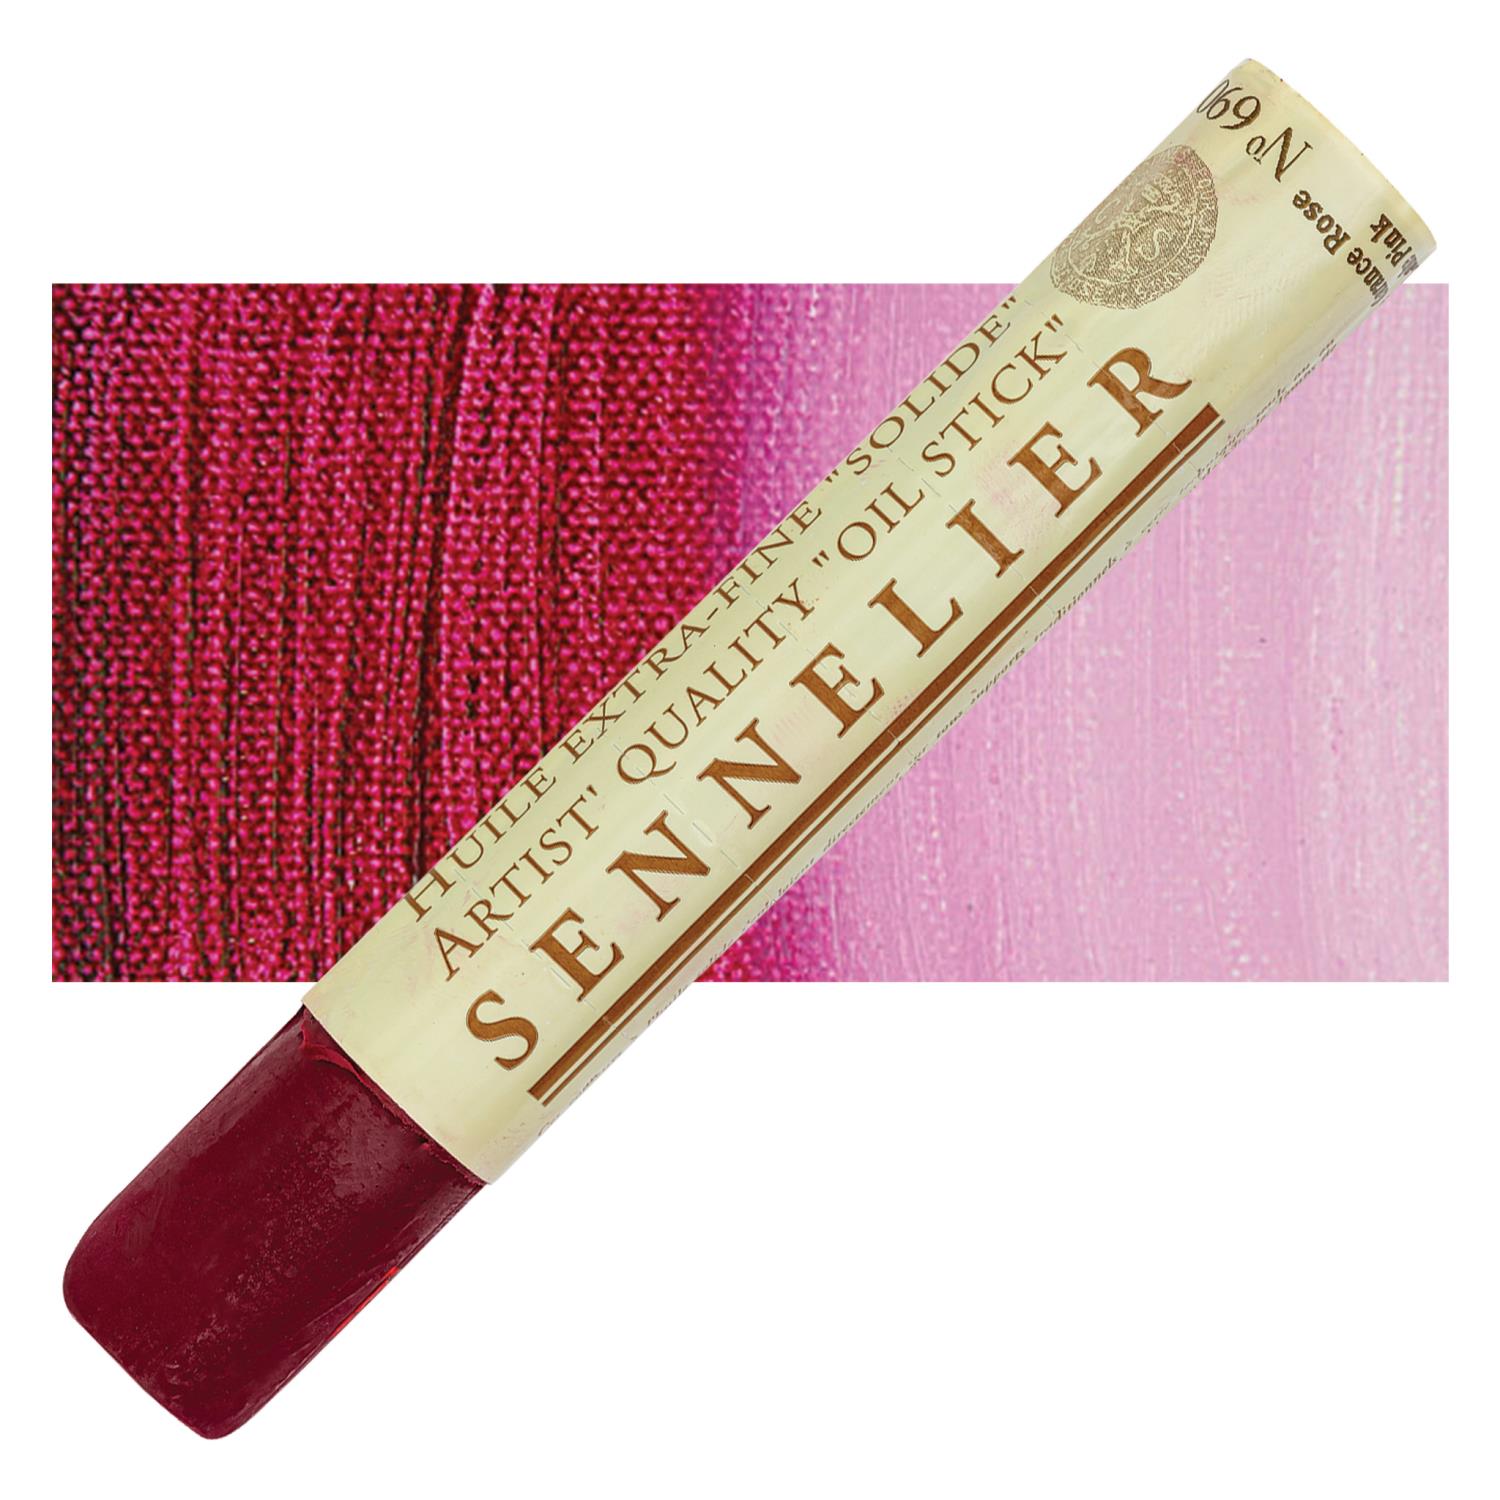 Sennelier Artist Oil Stick 38ml - 690 Pink Madder Lake S3 utgår